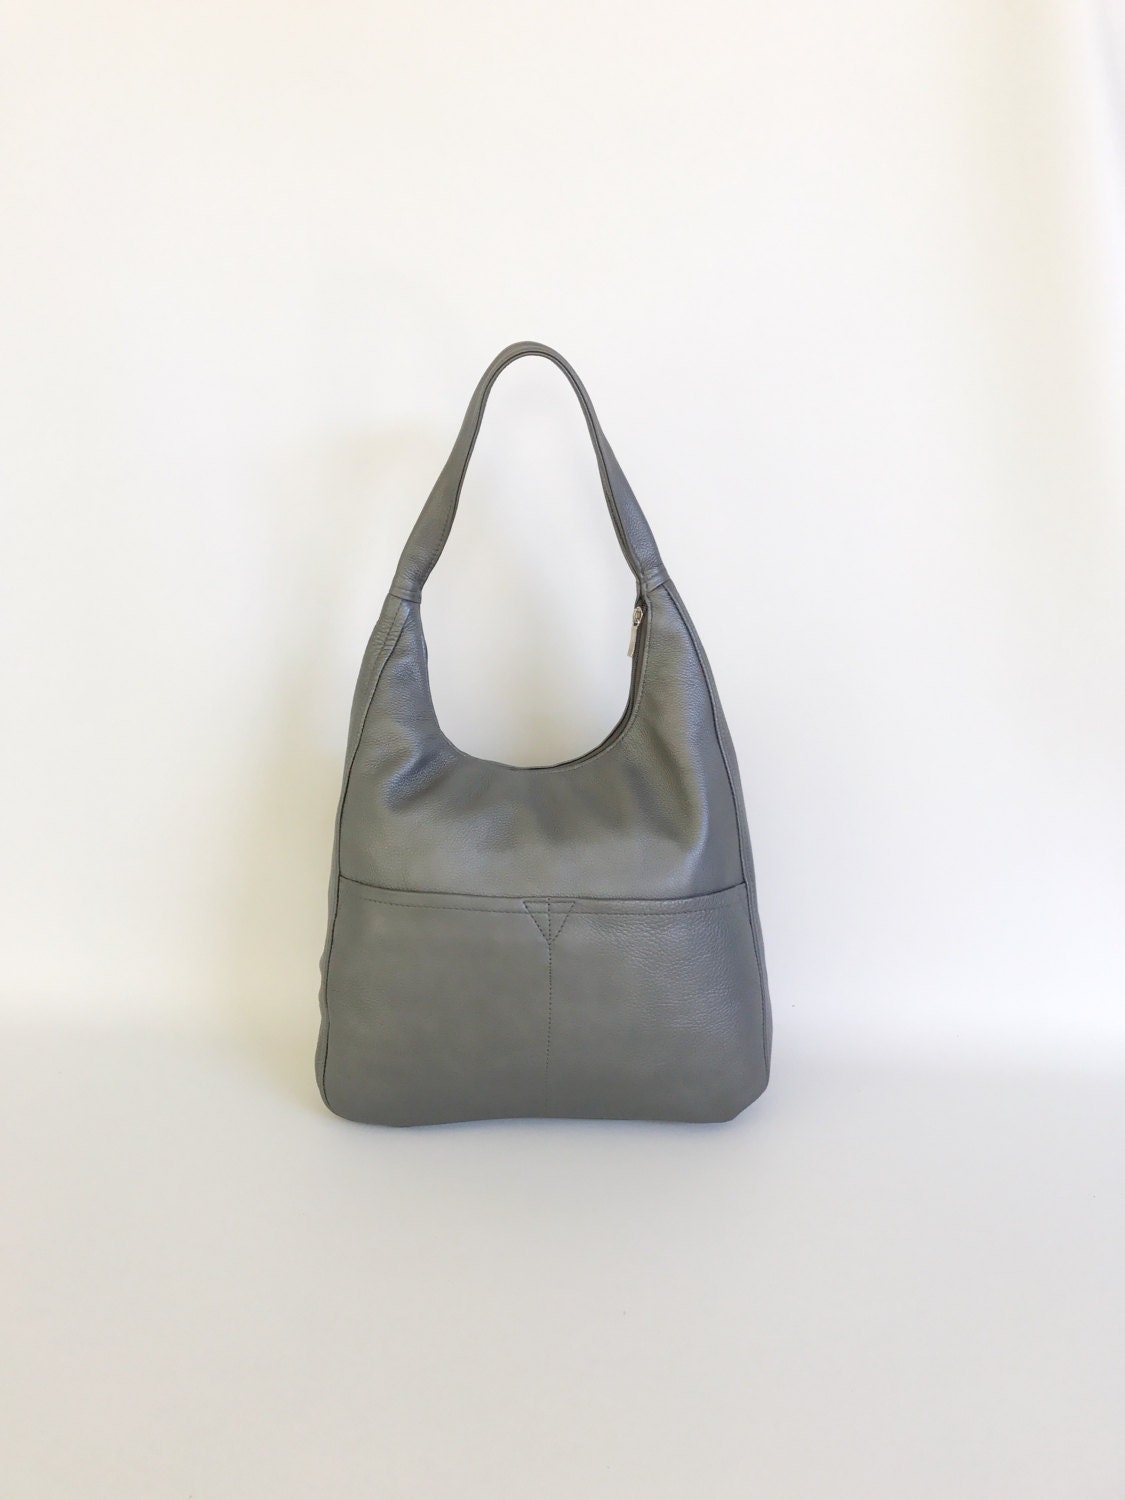 Women leather bag metallic gray hobo purse handmade stylish